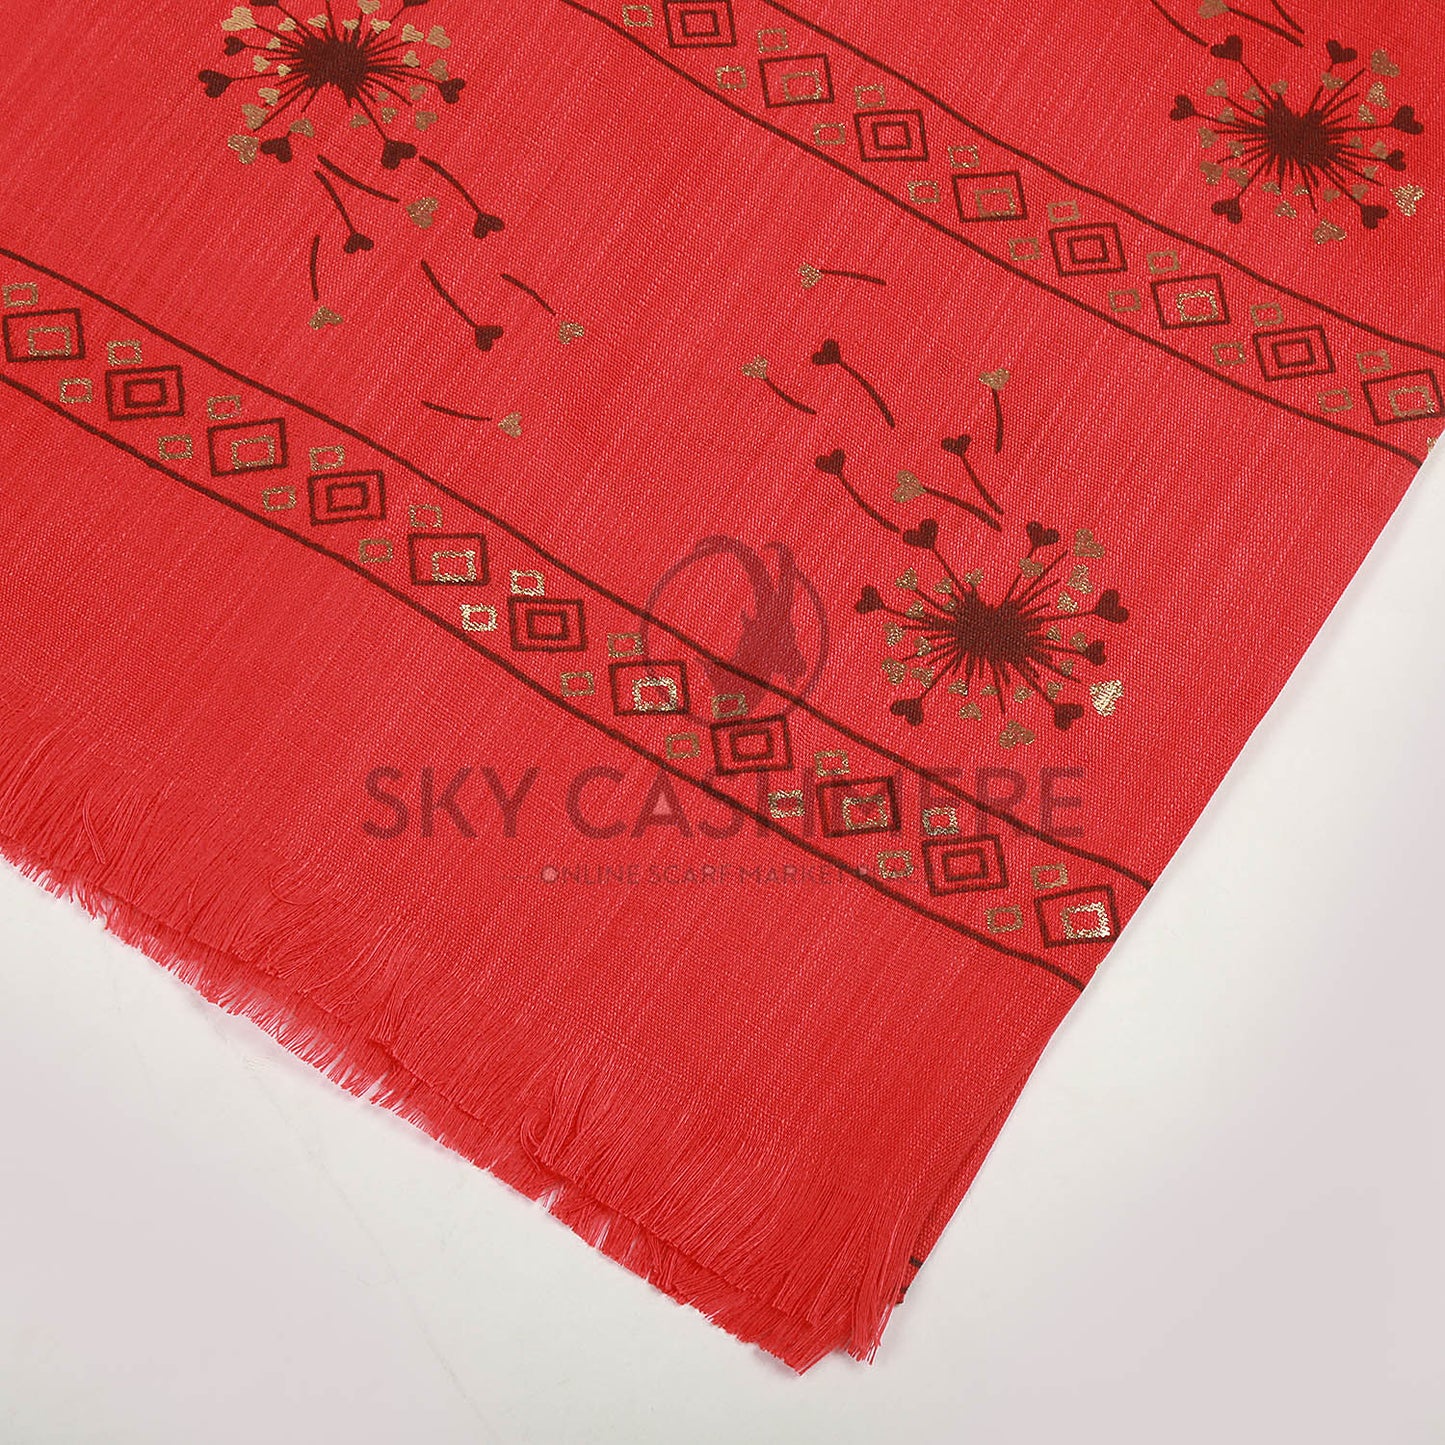 Turkish lawn scarf with blog print - Cinnabar